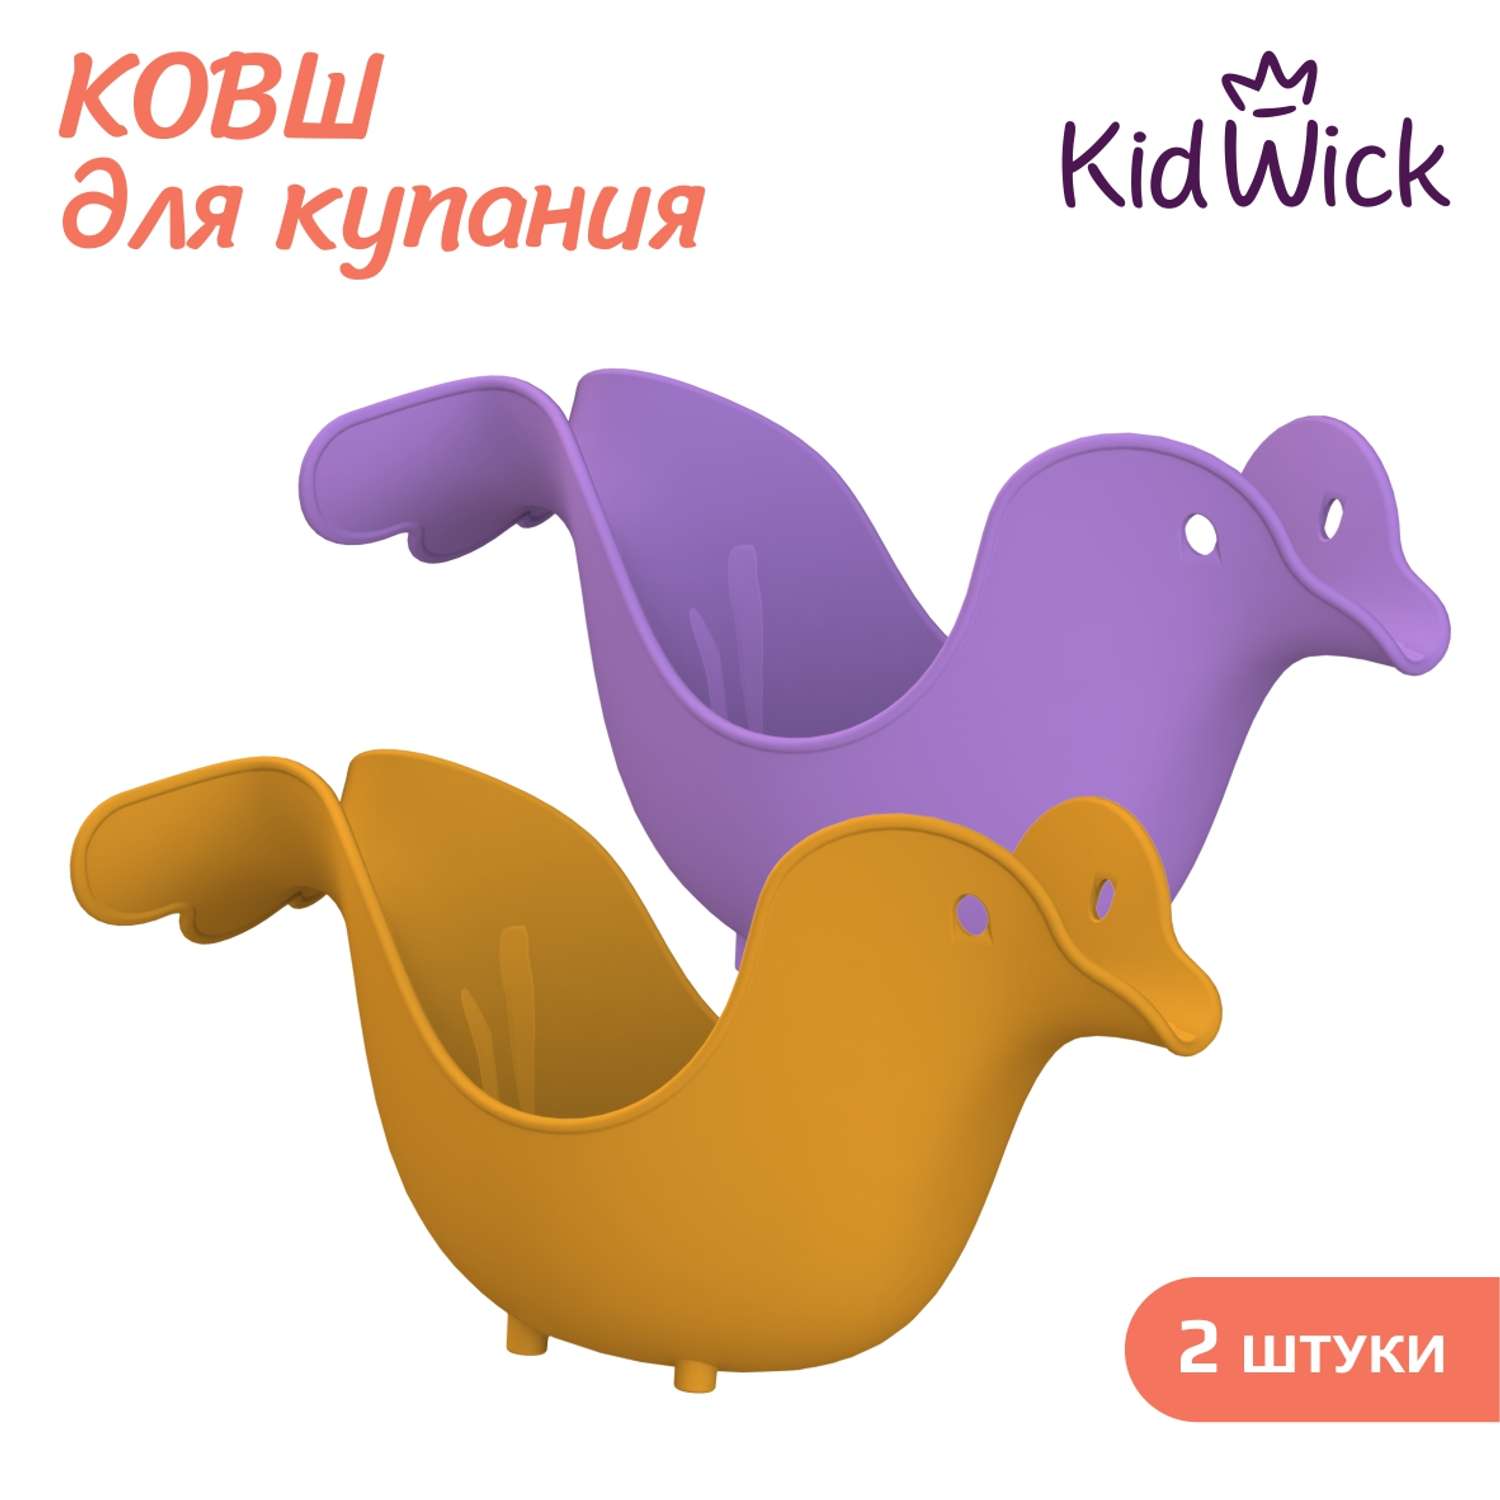 Набор ковшей для купания KidWick Птичка 2 штуки оранжевый и фиолетовый - фото 1